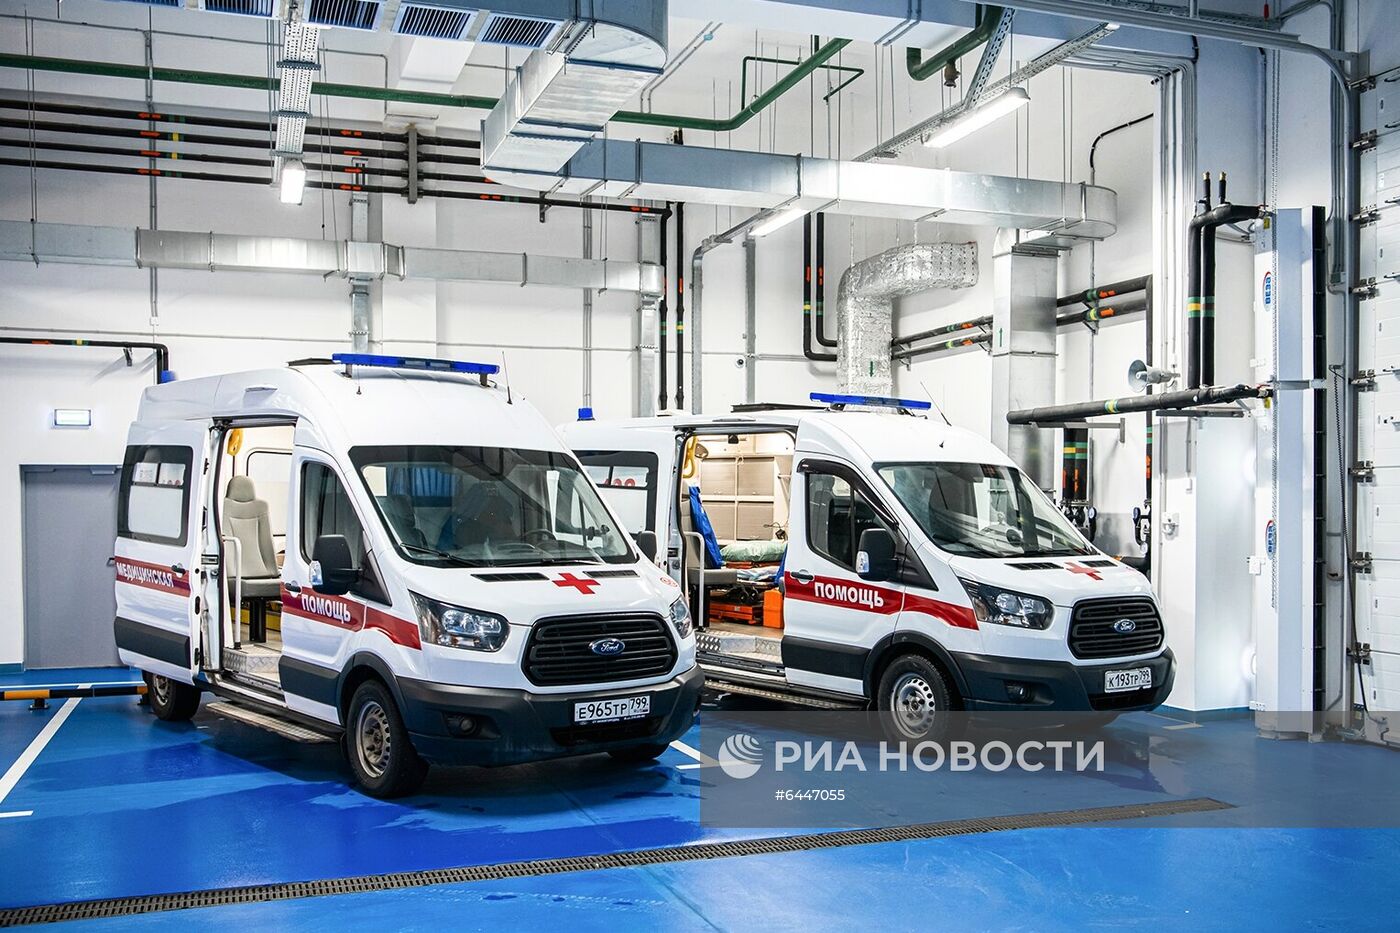 Мэр Москвы С. Собянин осмотрел новую подстанцию скорой помощи в Коммунарке